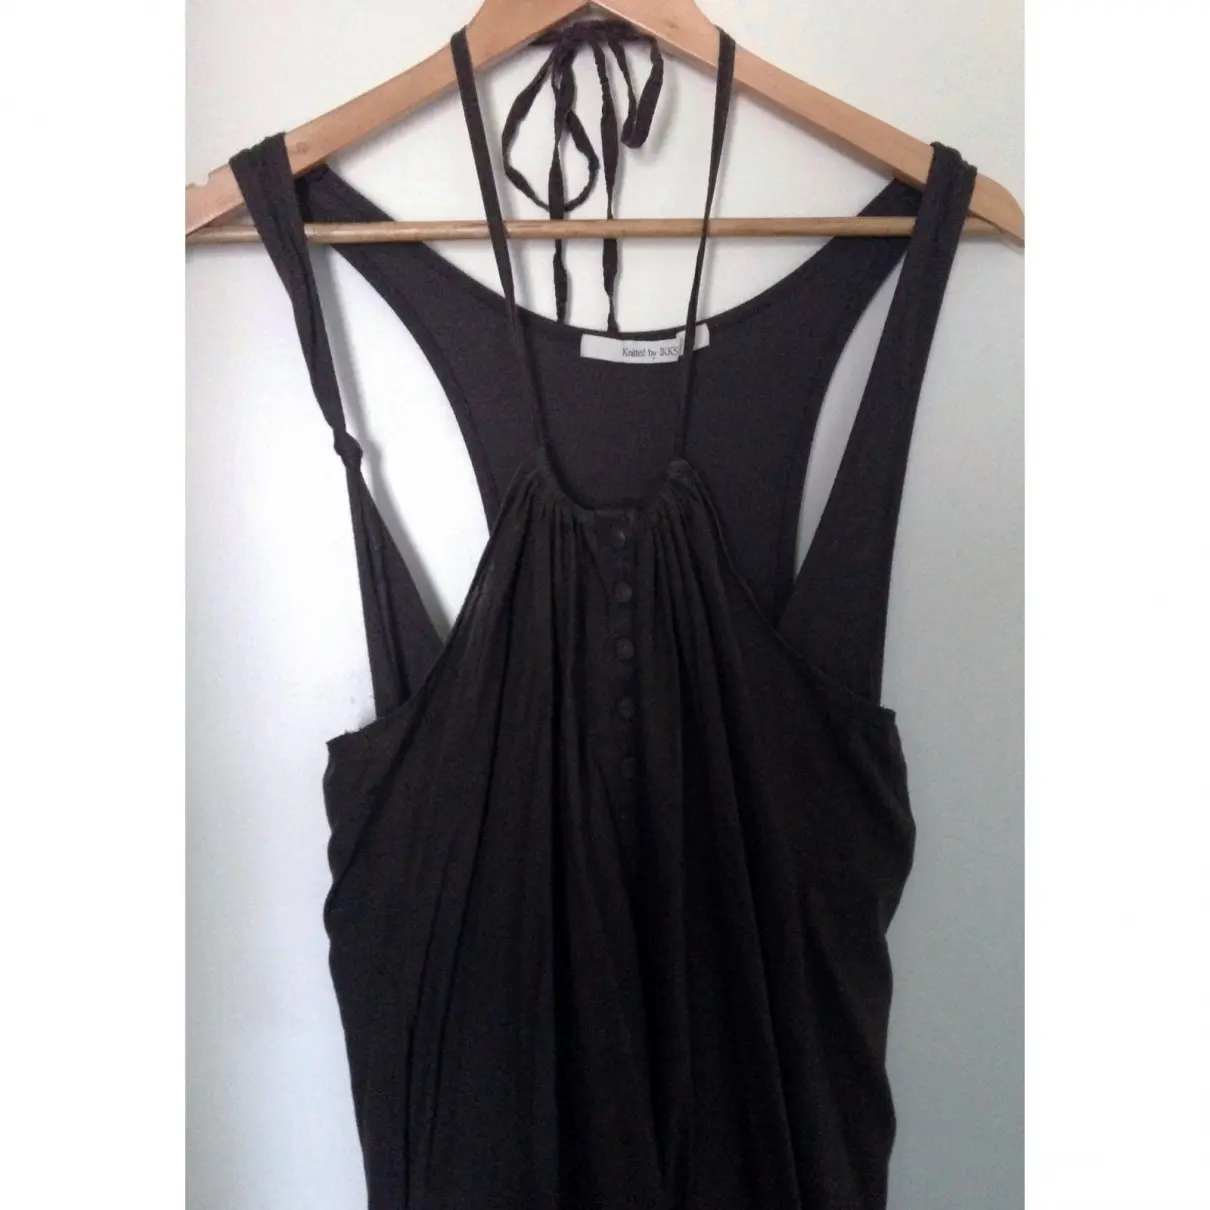 Buy Ikks Mid-length dress online